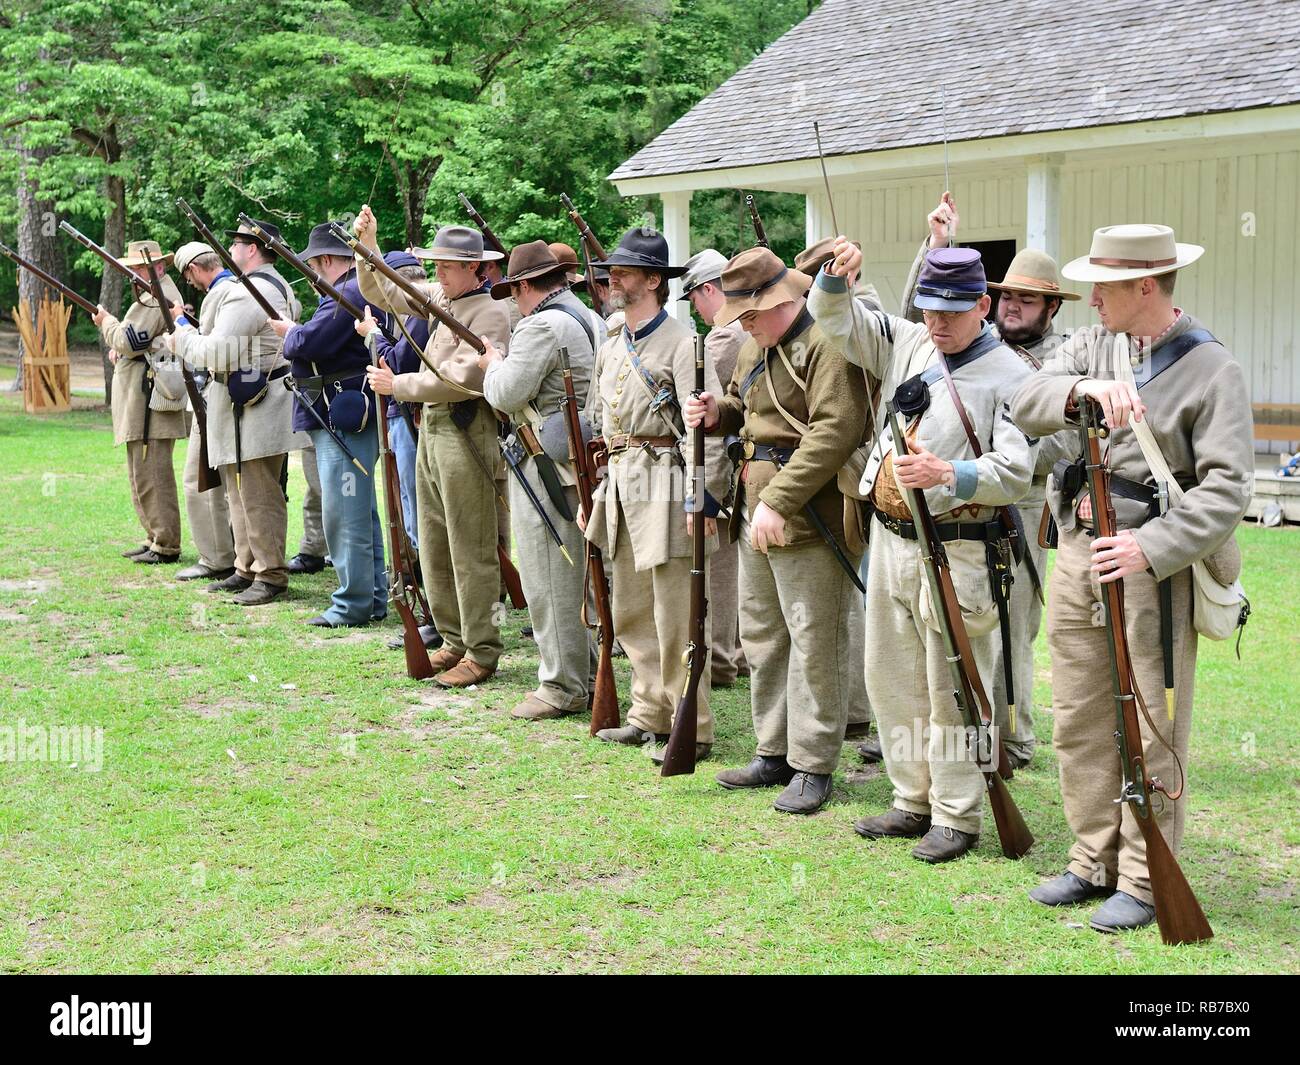 Amerikanischer Bürgerkrieg reenactment Soldaten in Uniformen der Konföderation und der Union stehen, die sich in der Ausbildung an der Schlacht Erholung in Marbury Alabama USA. Stockfoto